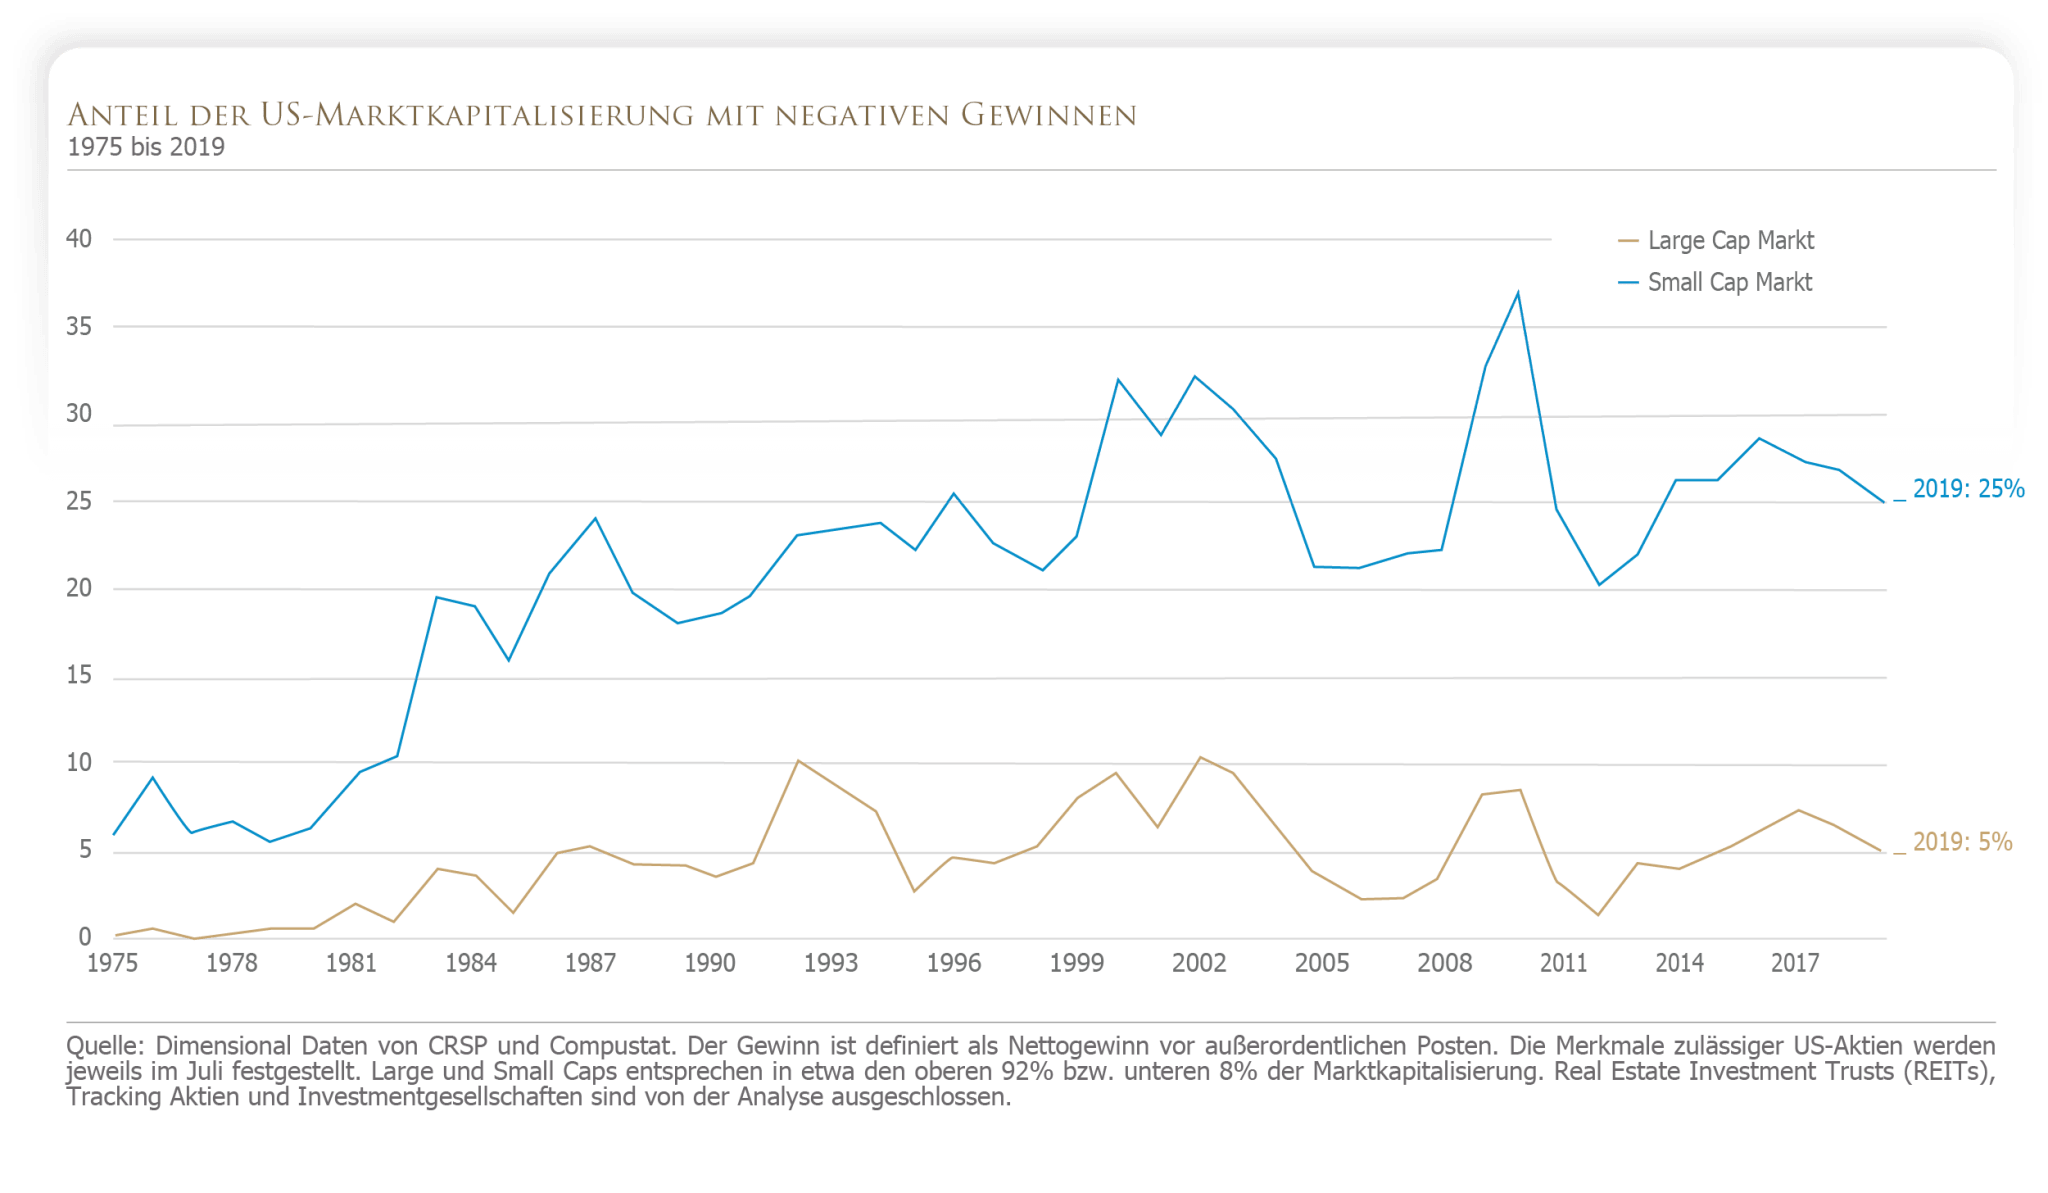 Anteil der US-Marktkapitalisierung mit negativen Gewinnen 1975 - 2019